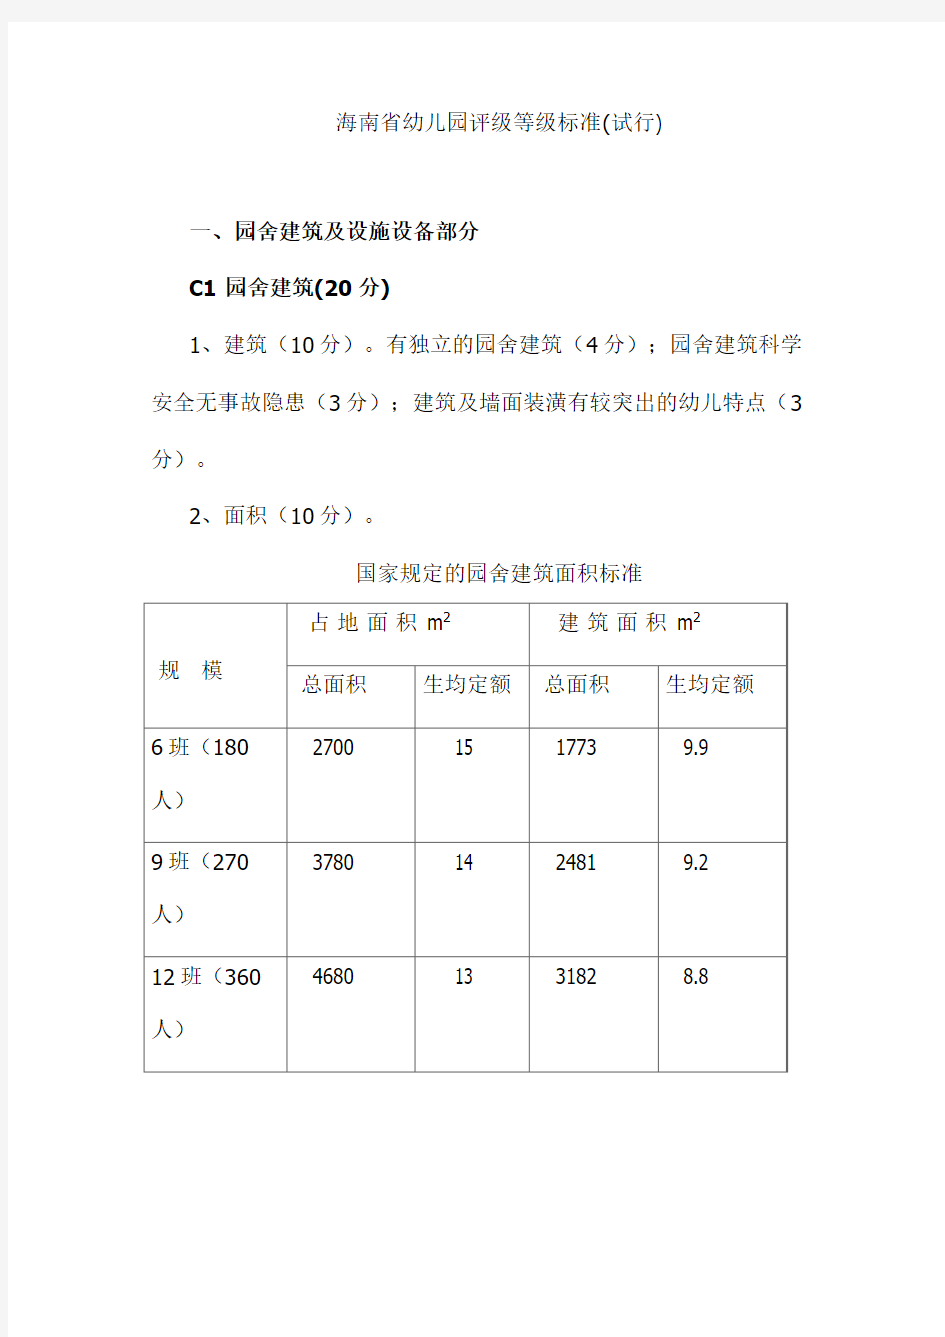 海南省幼儿园评级等级标准(试行)